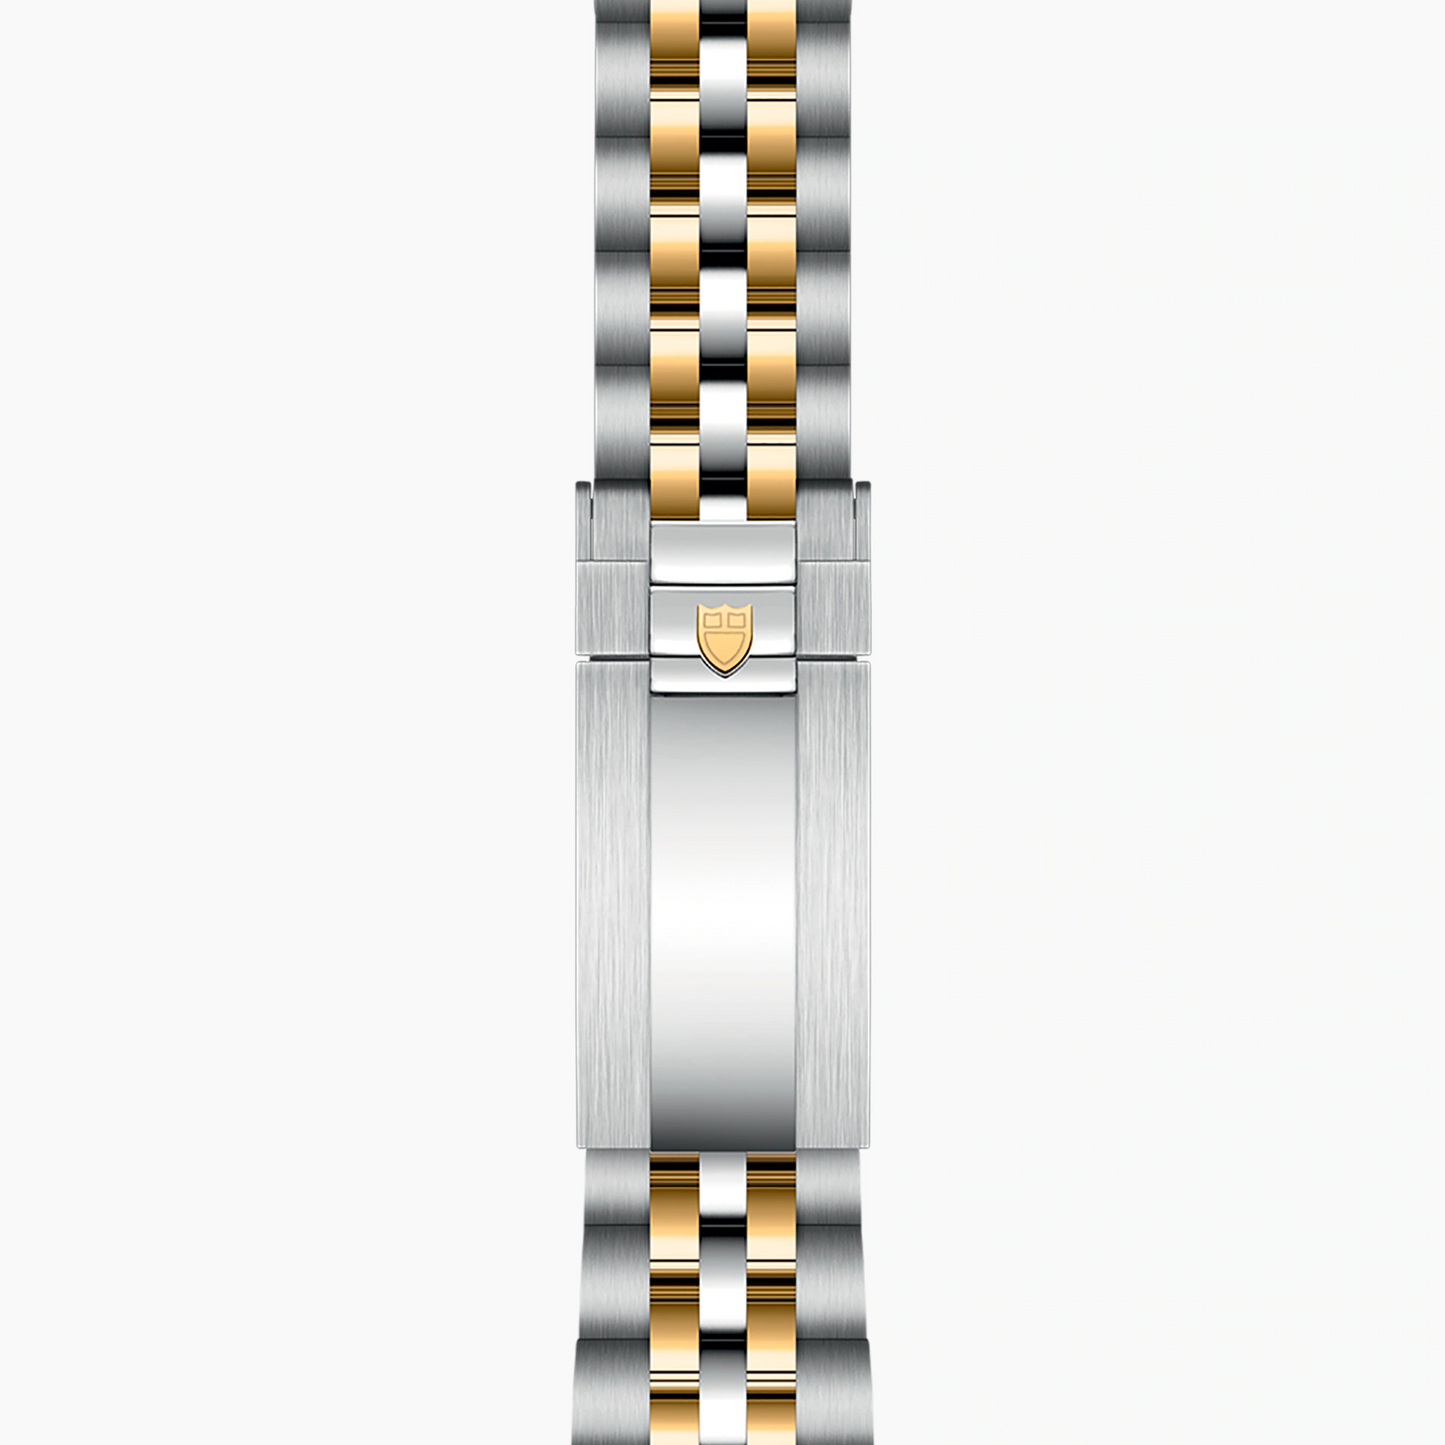 Tudor Black Bay 39 S&G, Stainless Steel and 18k Yellow Gold, Ref# M79663-0002,  bracelet